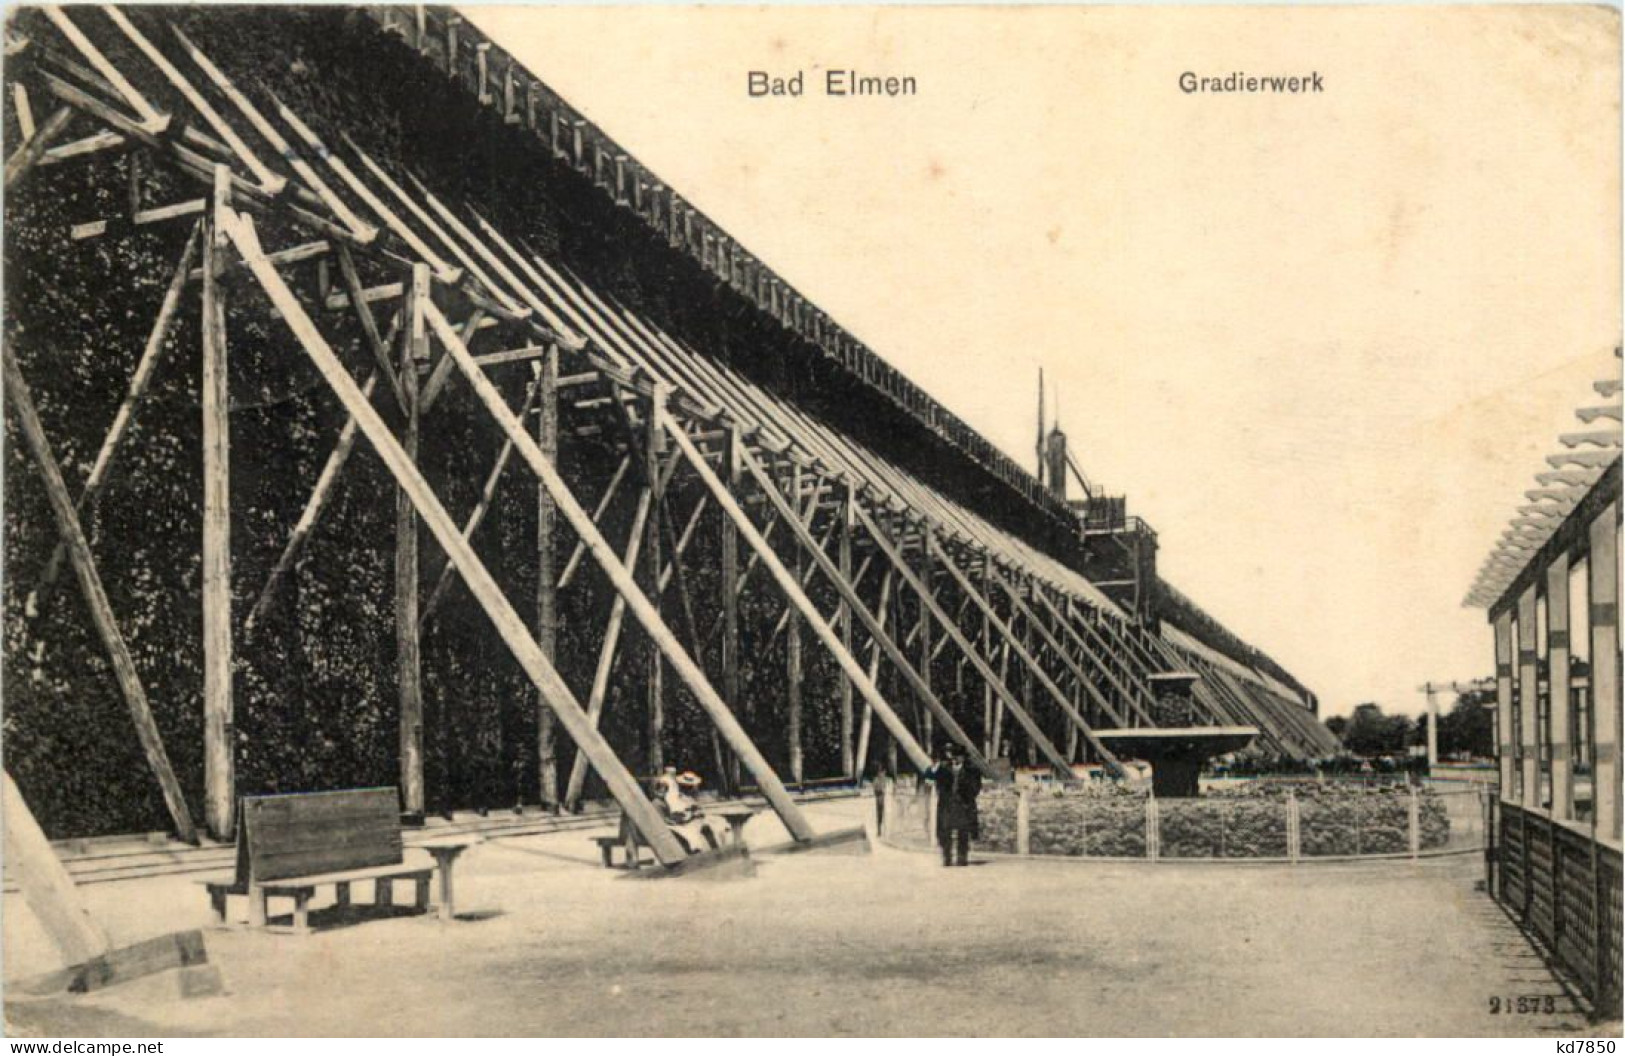 Bad Elmen, Gradierwerk - Schoenebeck (Elbe)